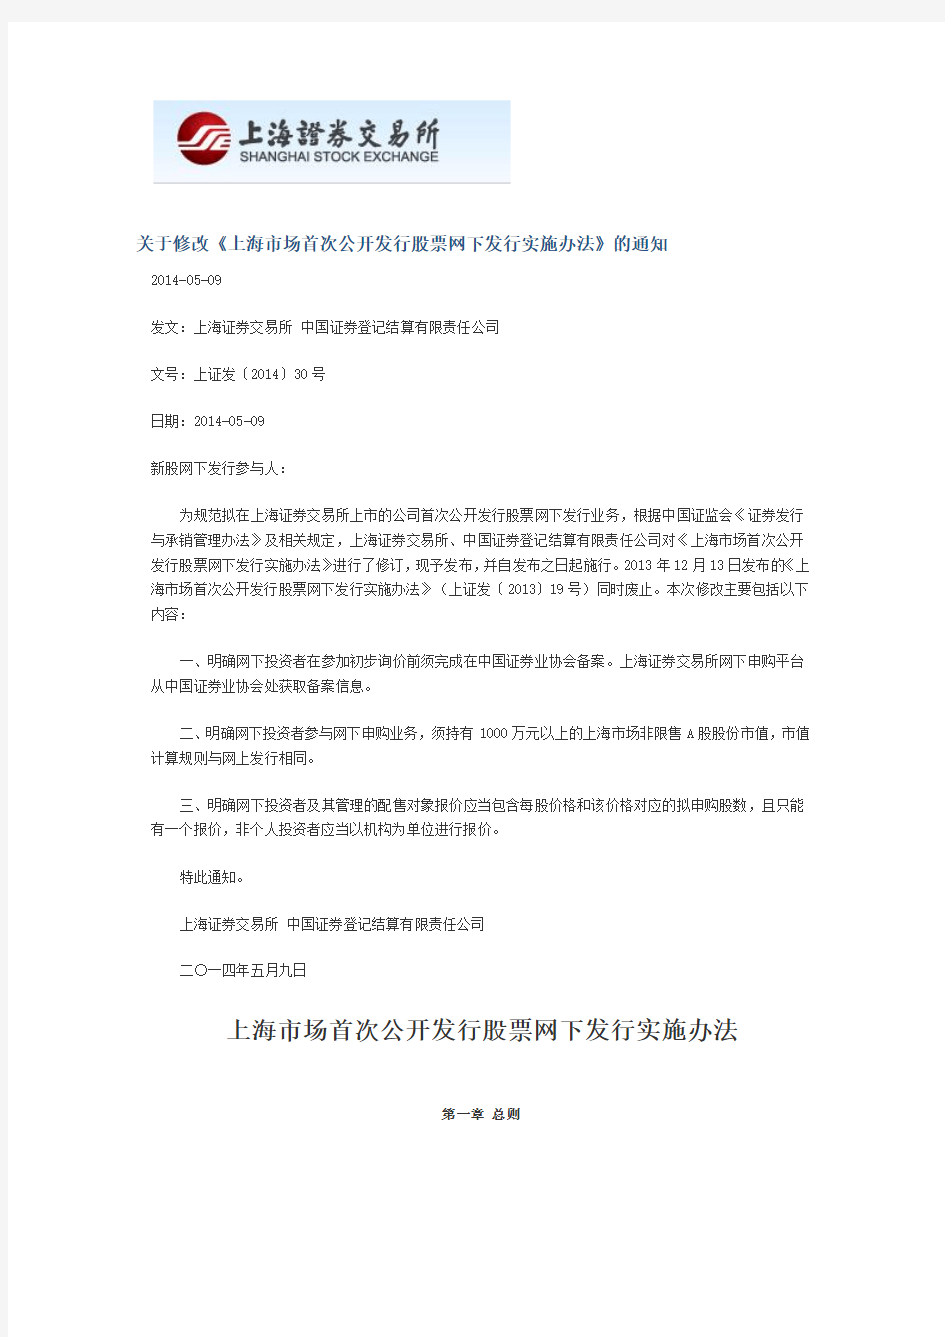 关于修改《上海市场首次公开发行股票网下发行实施办法》 …